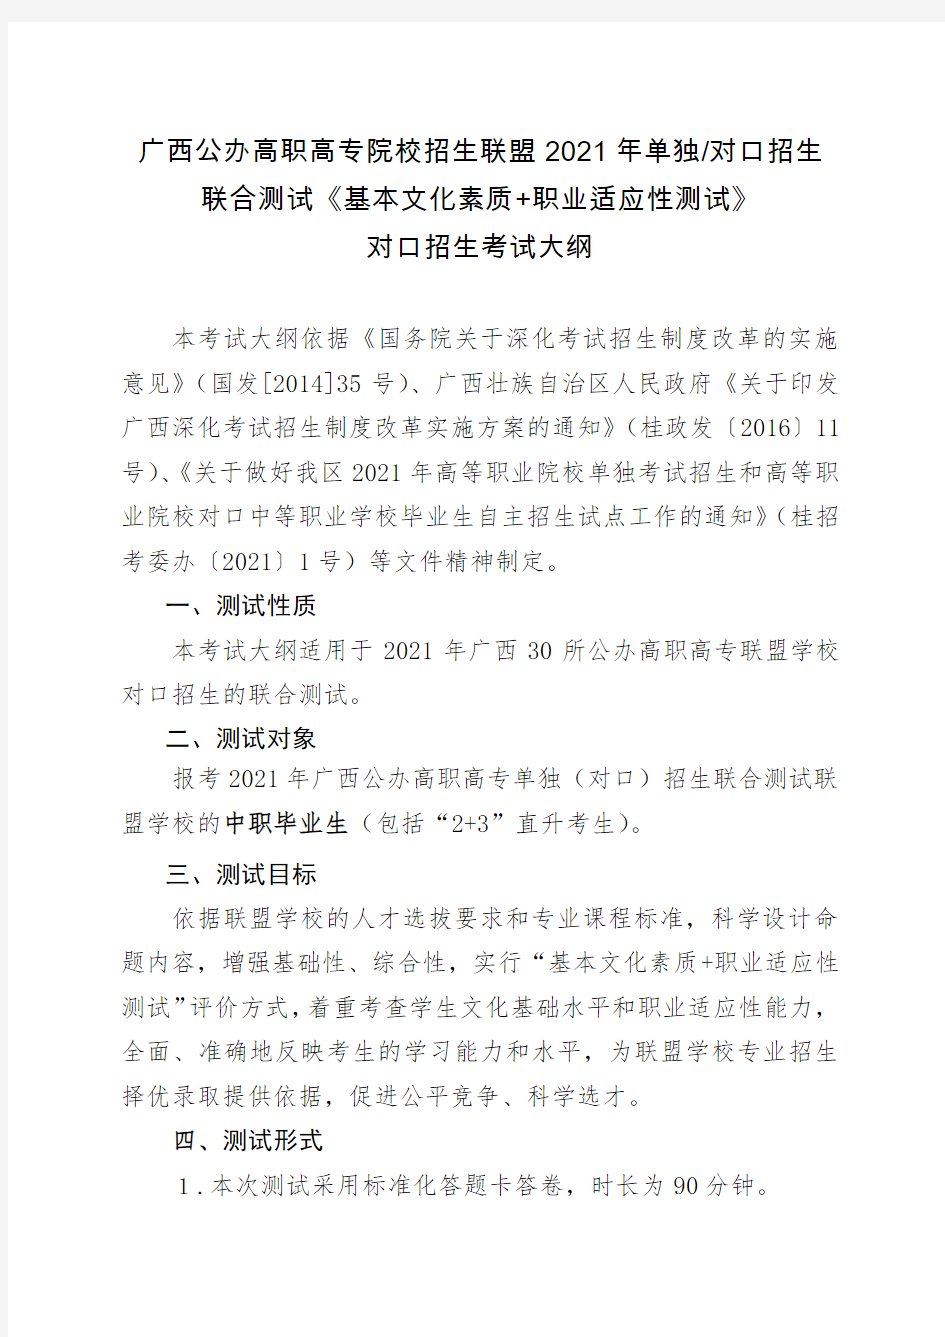 广西公办高职高专院校招生联盟2021年对口招生联合测试考试大纲及样题(定稿) - 第二份